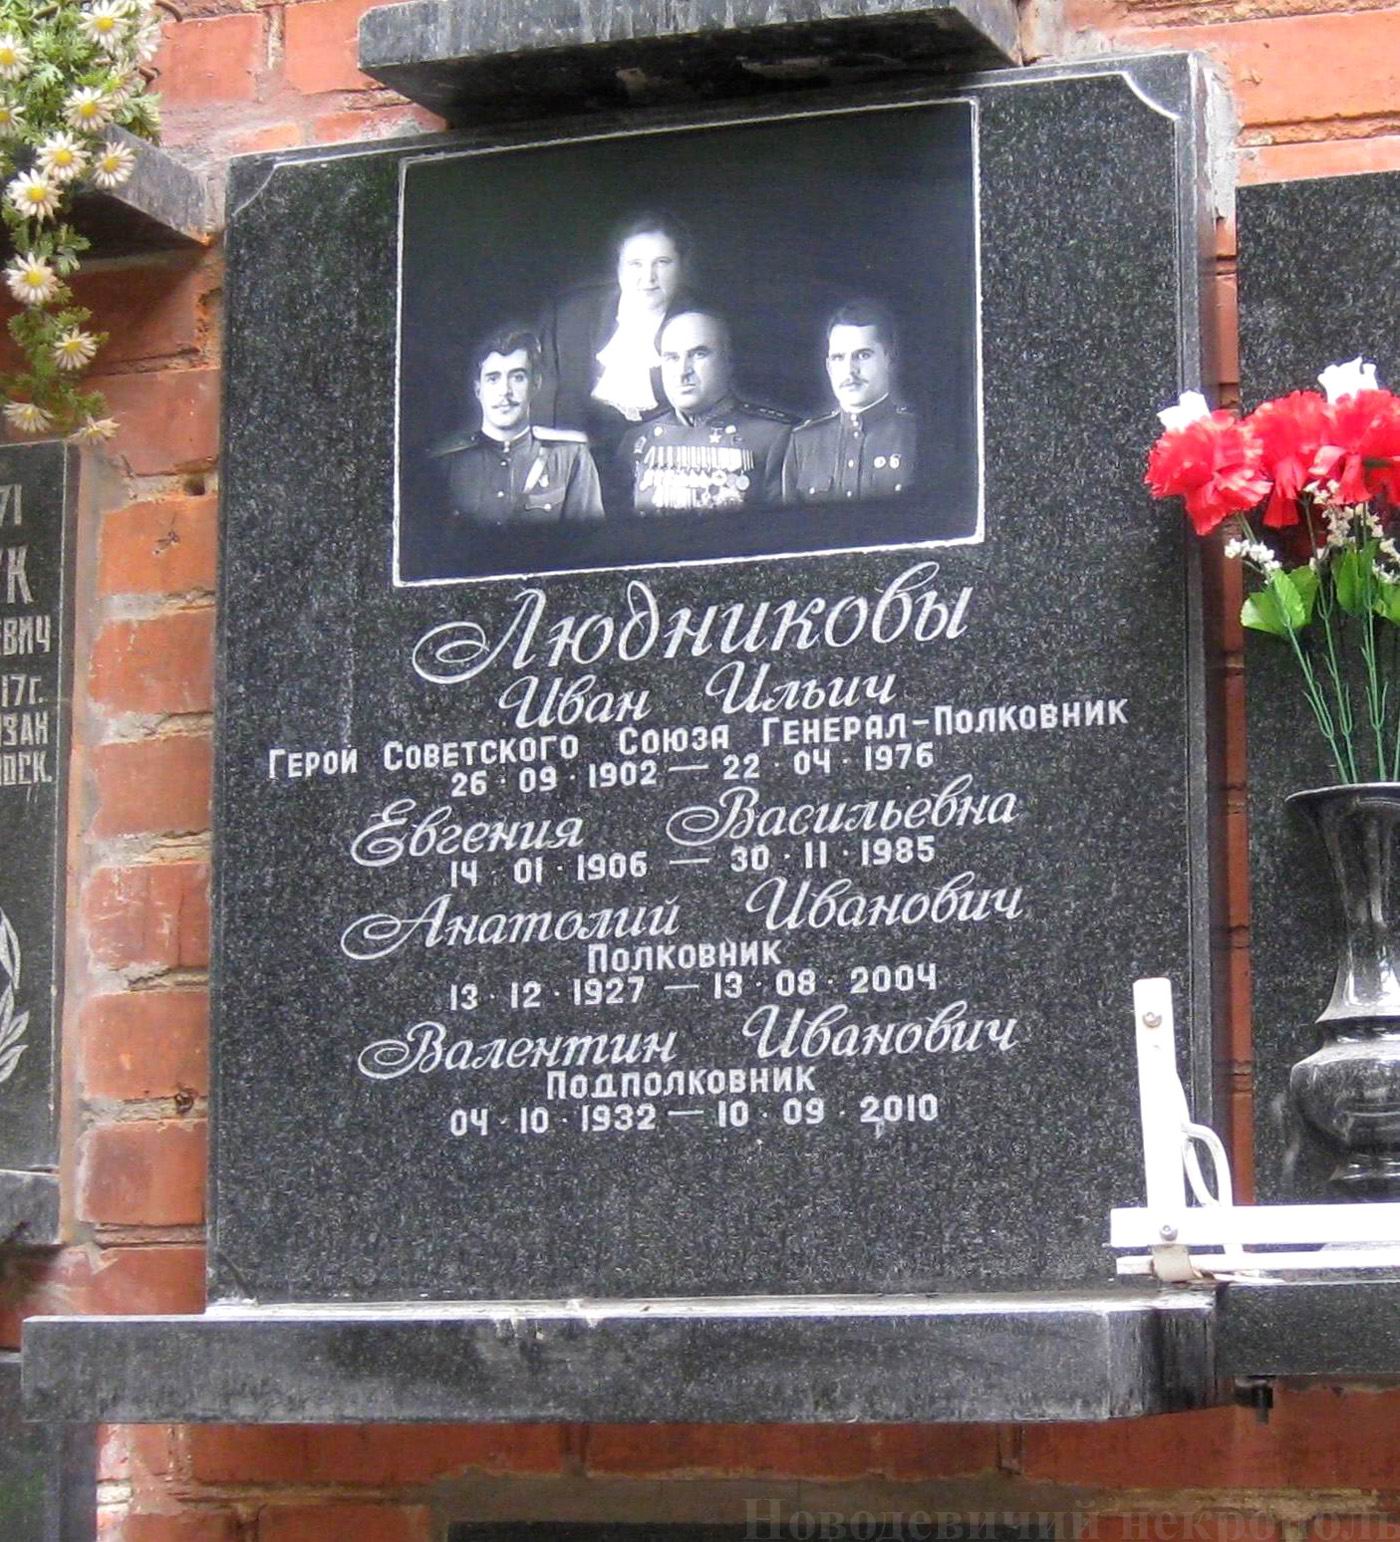 Плита на нише Людникова И.И. (1902-1976), на Новодевичьем кладбище (колумбарий [134]-31-2). Нажмите левую кнопку мыши, чтобы увидеть вариант до 2010.